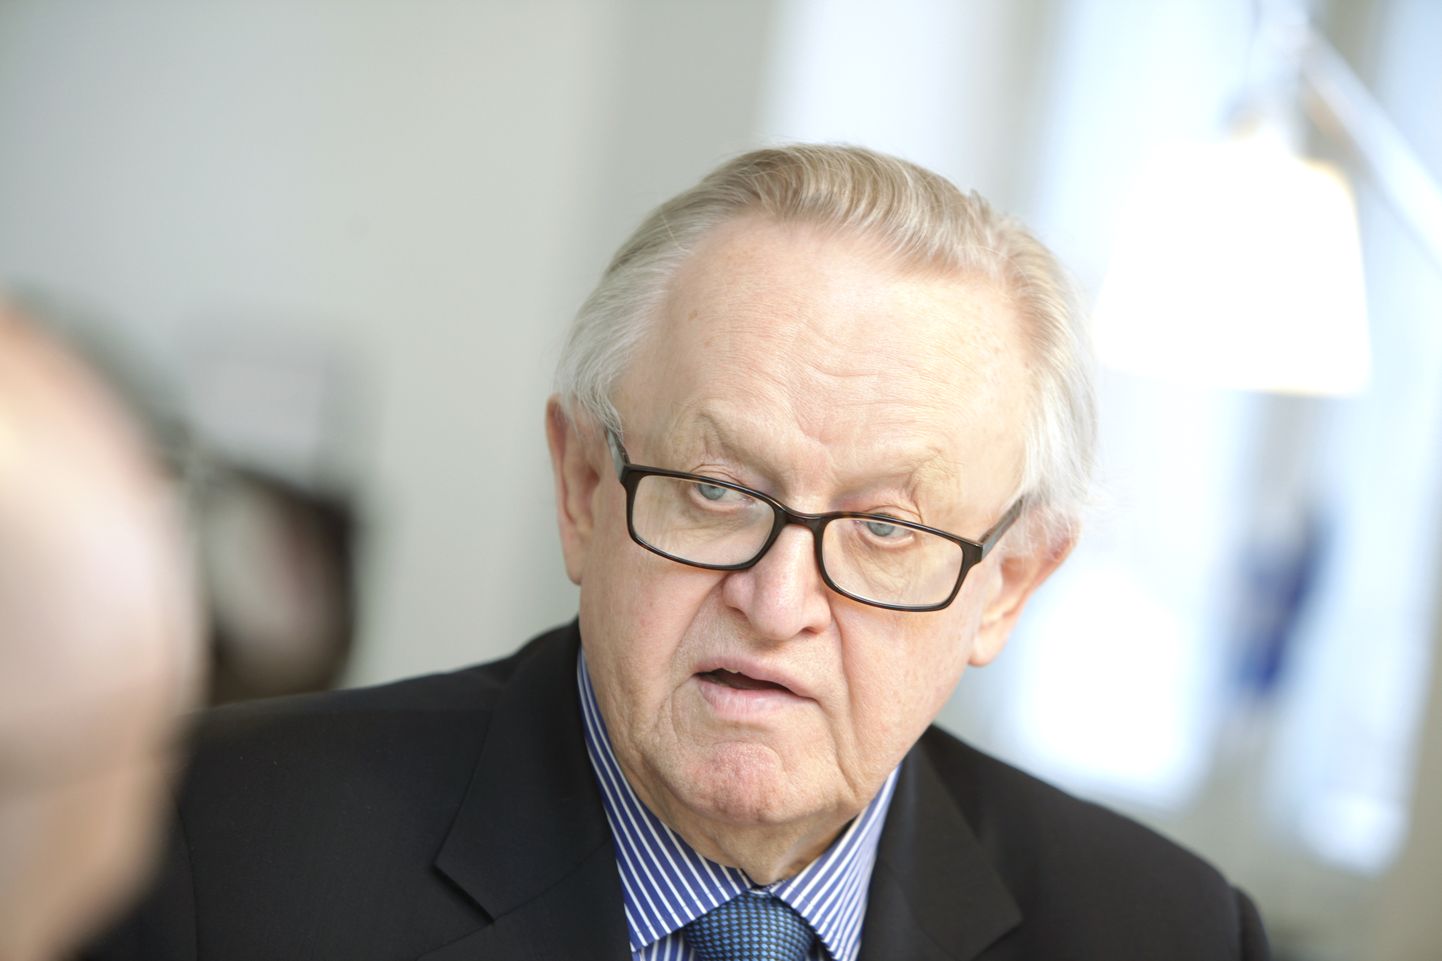 Soome endine president Martti Ahtisaari.